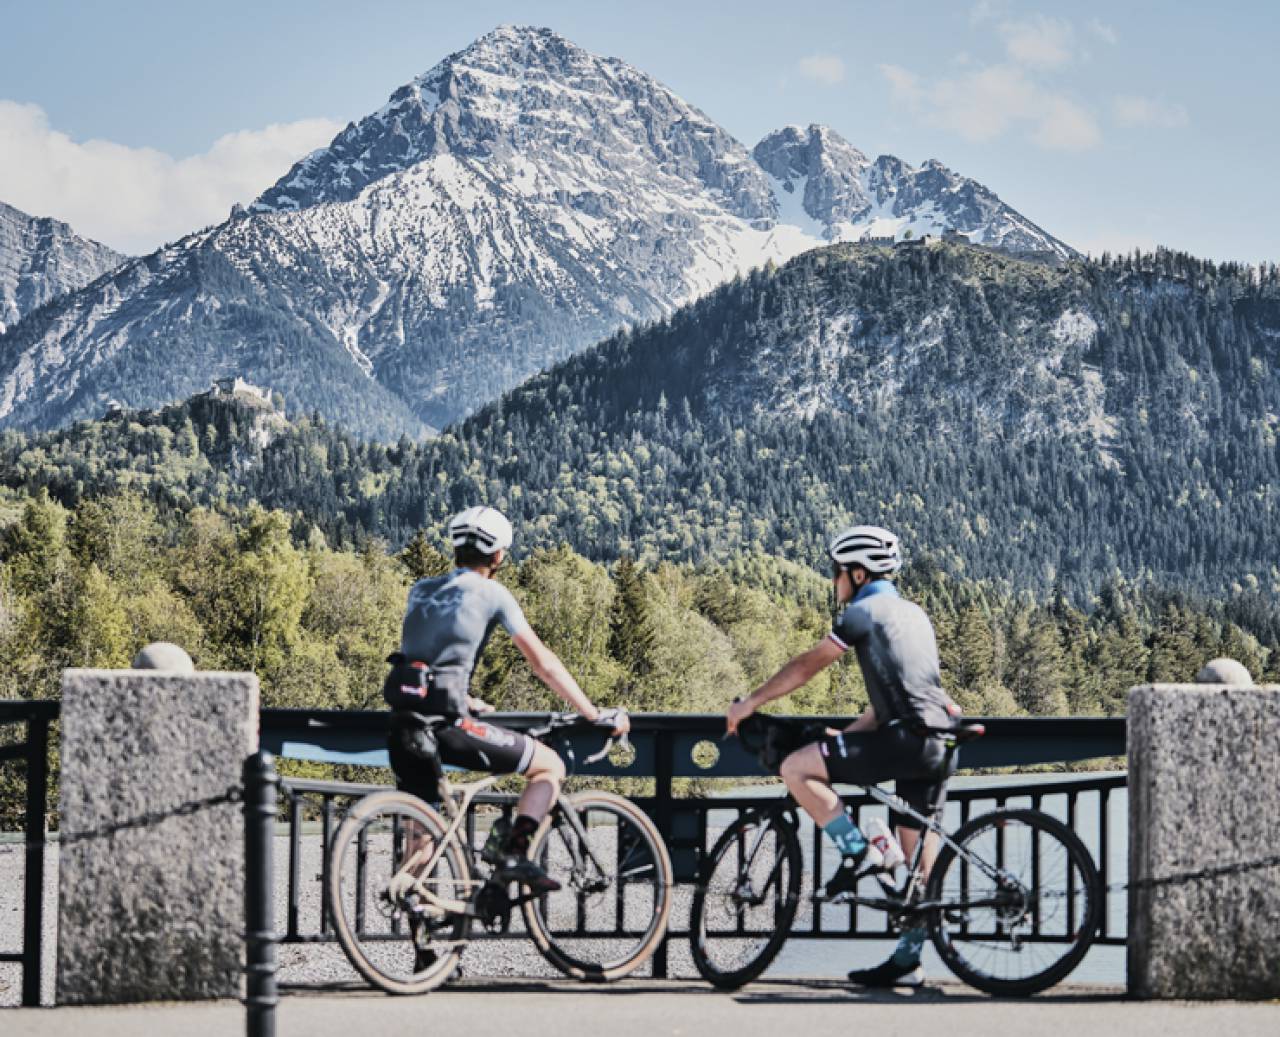 Radfahrer bei einer Pause mit Blick auf die verschneiten Berge